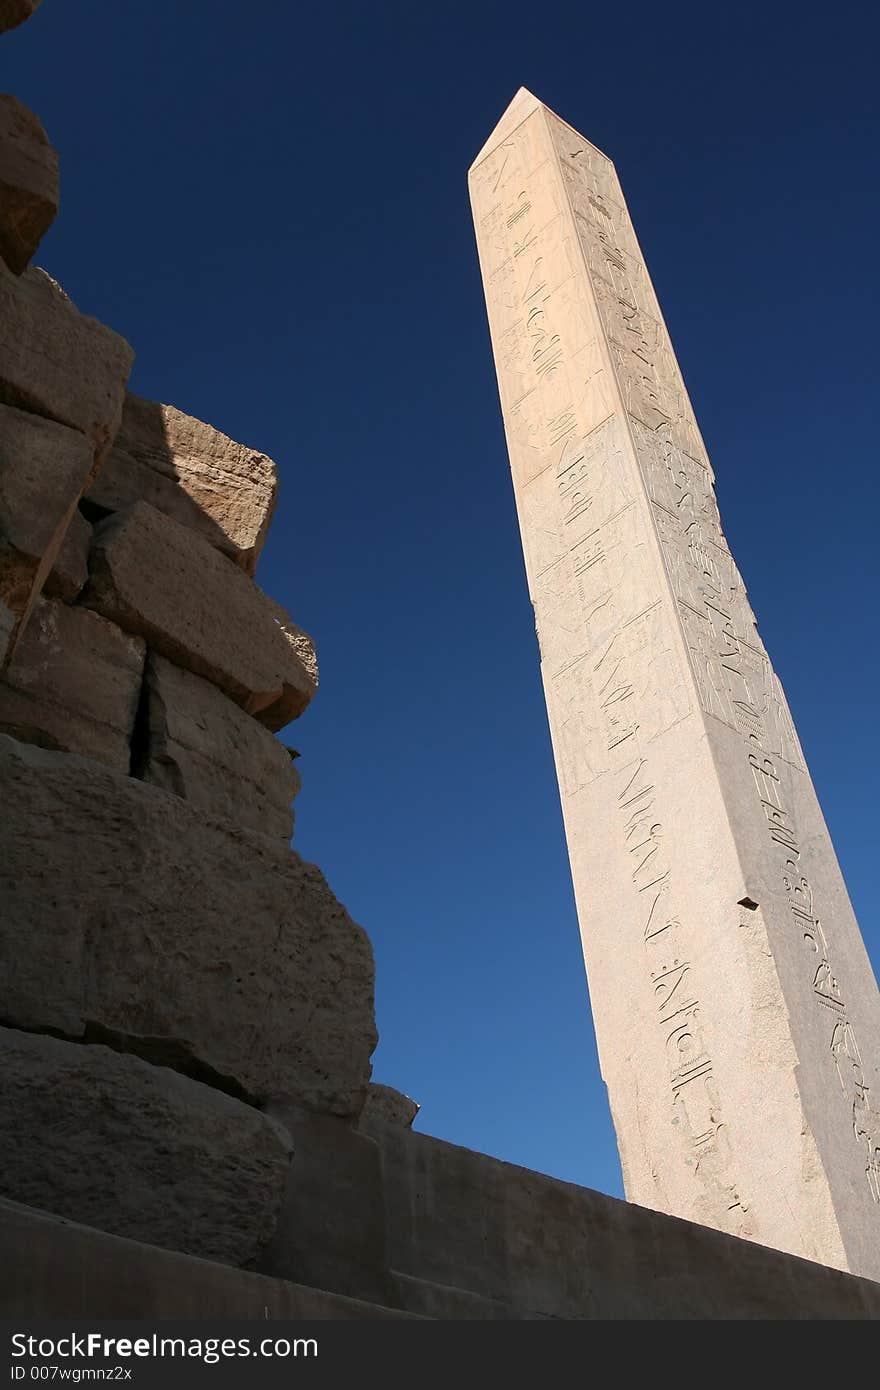 Obelisk of Queen Hatshepsut at the Karnak temple complex, Egypt. Obelisk of Queen Hatshepsut at the Karnak temple complex, Egypt